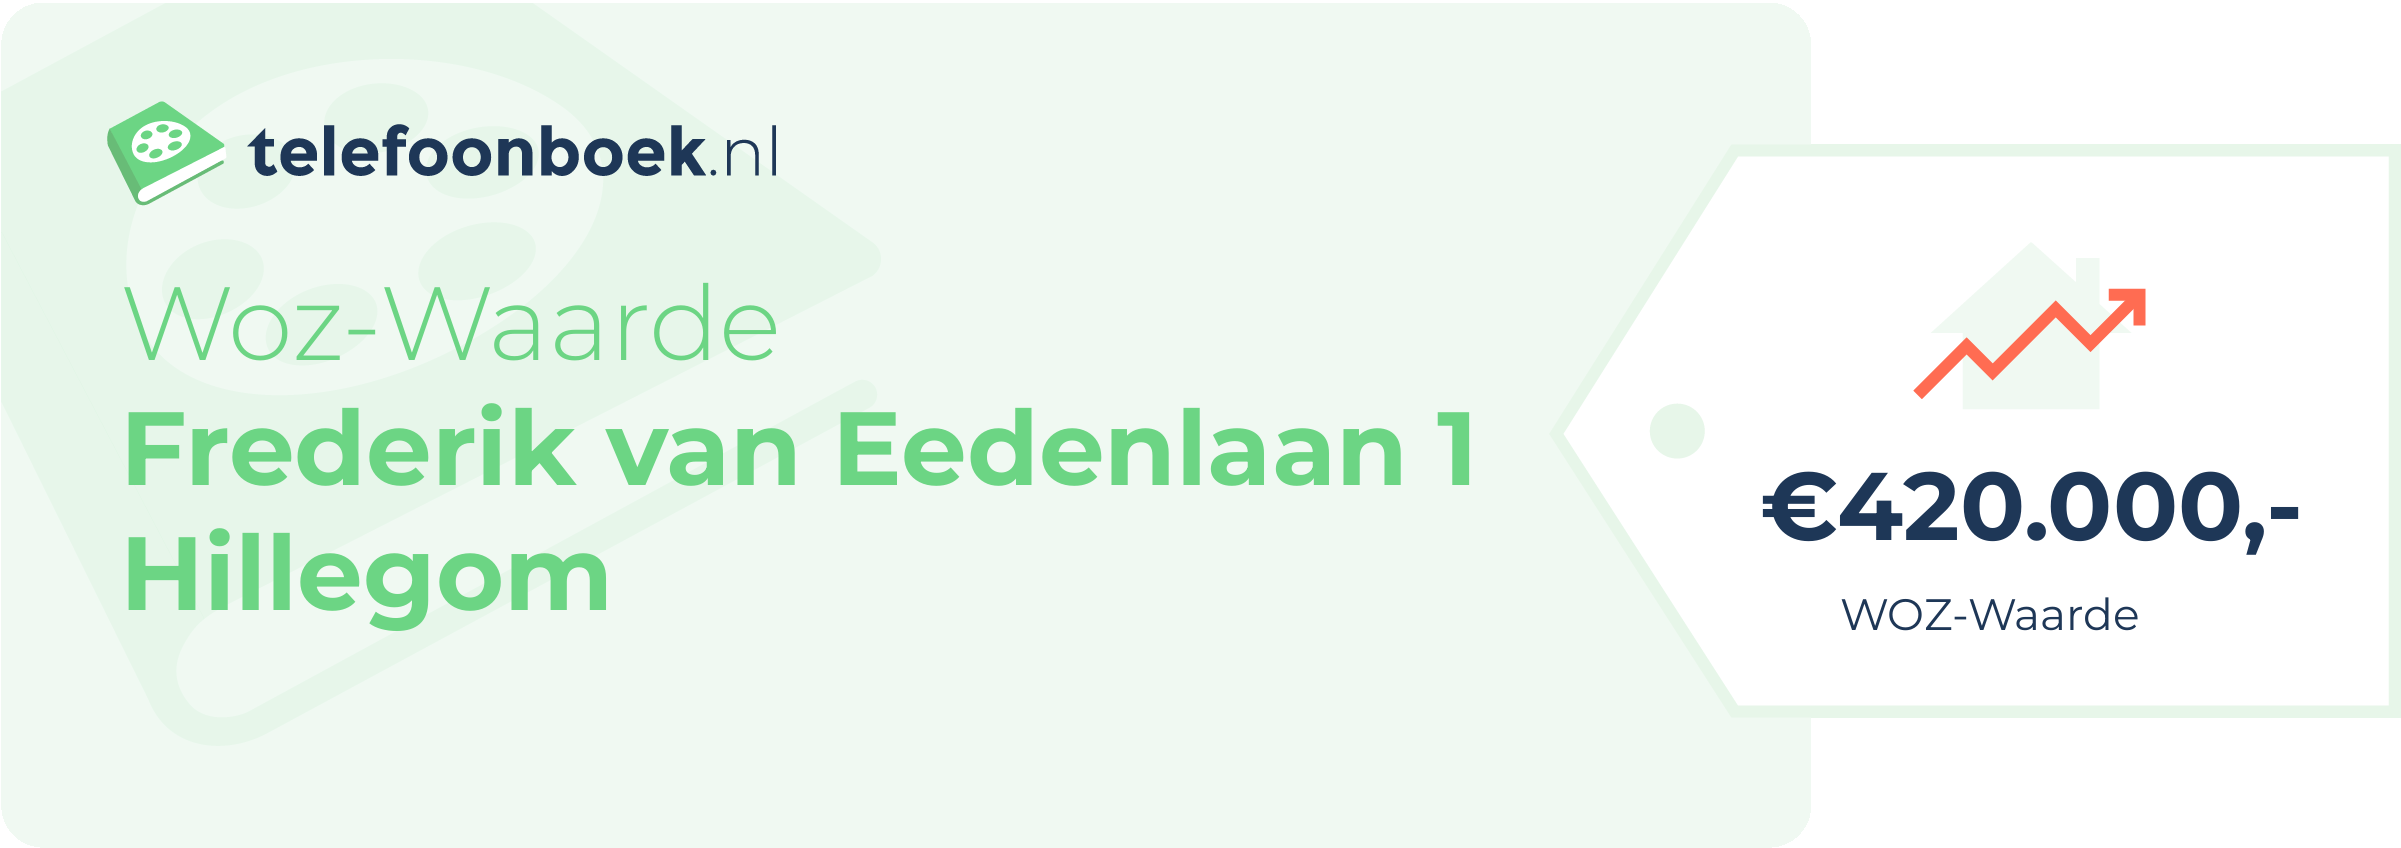 WOZ-waarde Frederik Van Eedenlaan 1 Hillegom